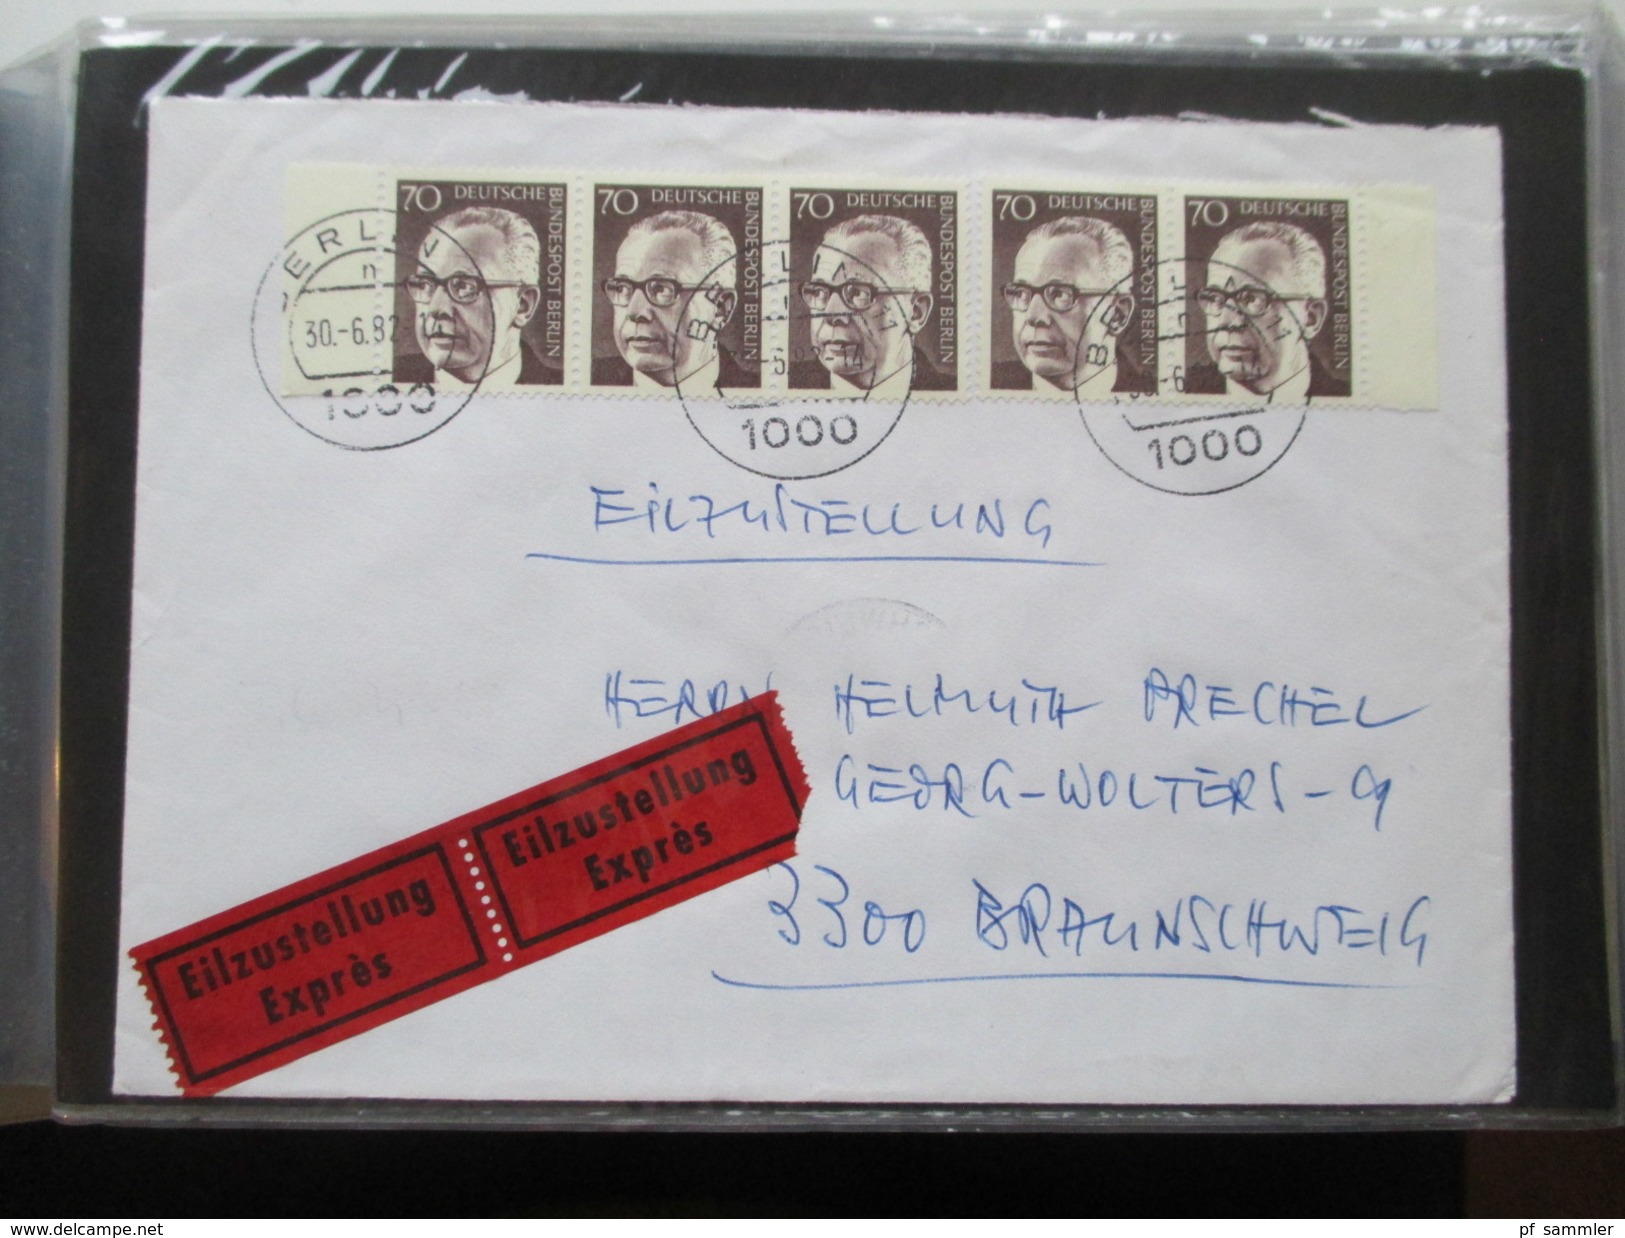 Berlin FDC / Bedarf 1953 - 1991 Fast alles portogerecht + Berlin Stempel! Kehrdrucke / HAN / Paare Sehr spannend! 88 stk